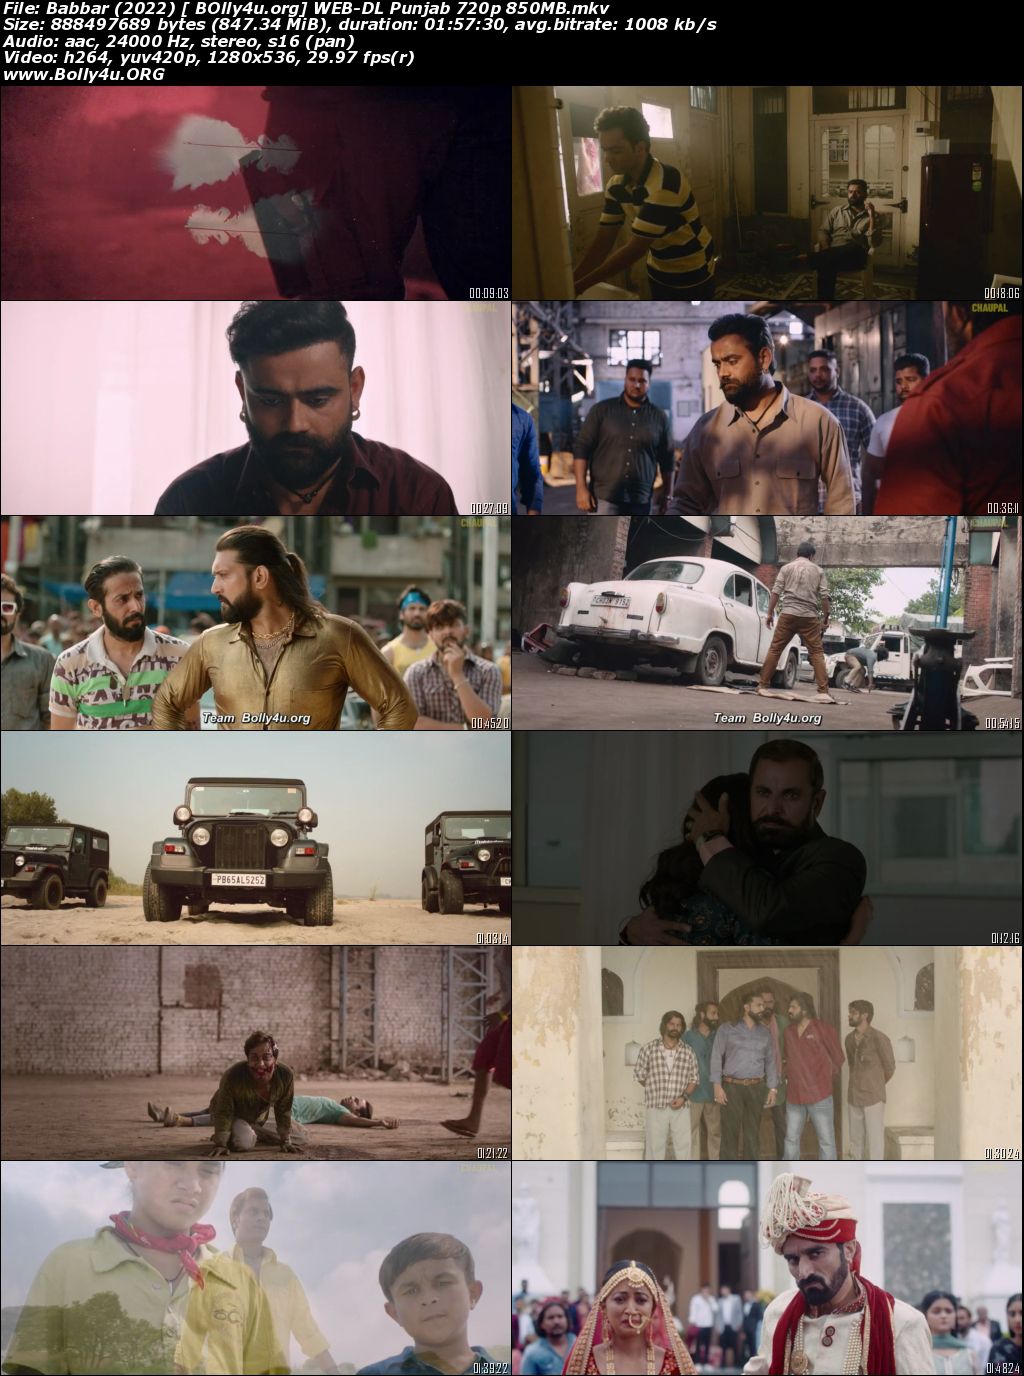 Babbar 2022 WEB-DL Punjabi Movie Download 720p 480p